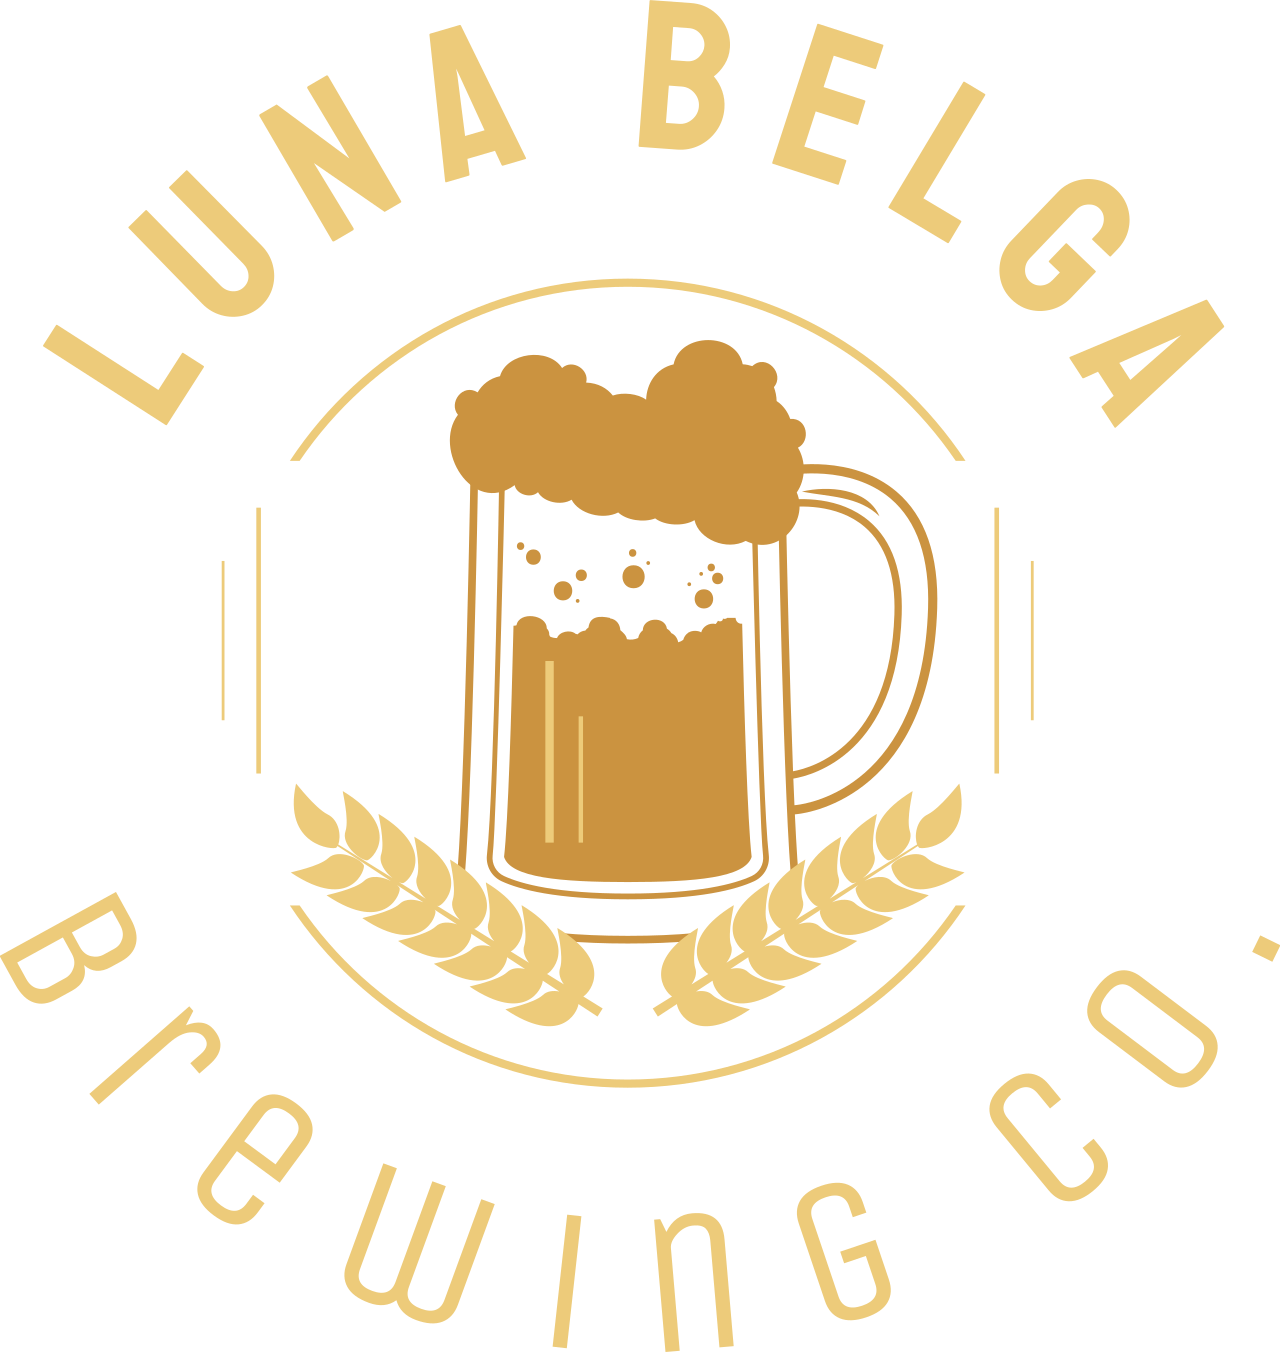 Luna Belga Brewing Co.'s web page